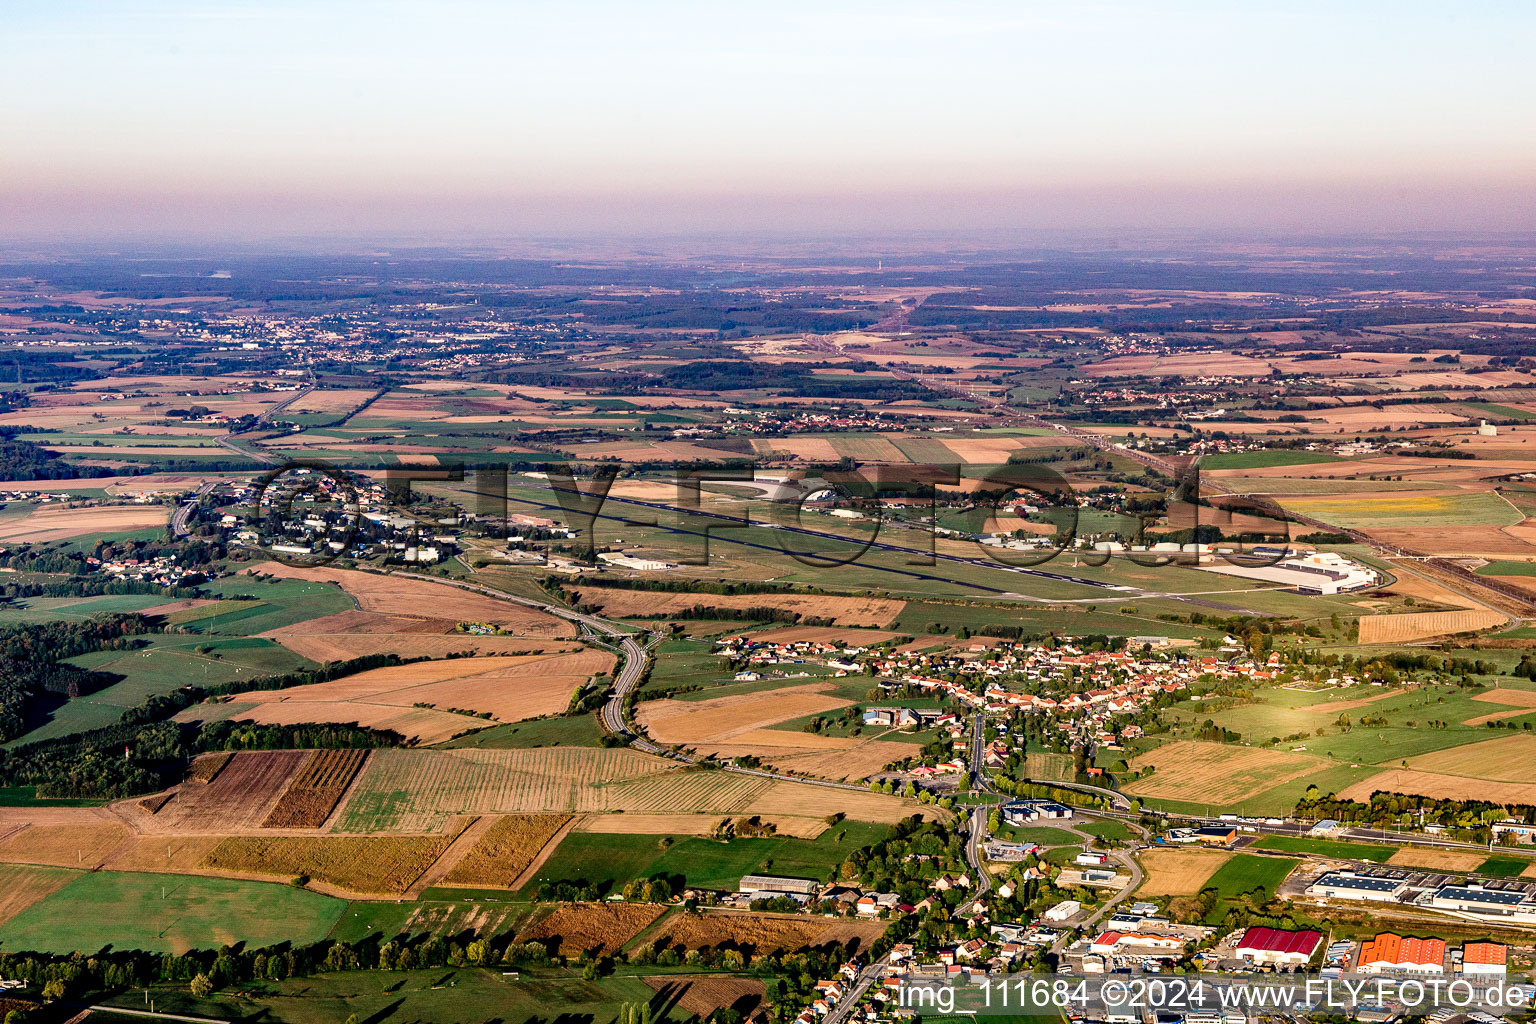 Vue aérienne de Pistes avec voies de circulation, hangars et terminaux sur le site de l'aéroport militaire de Phalsbourg à Phalsbourg à Bourscheid dans le département Moselle, France